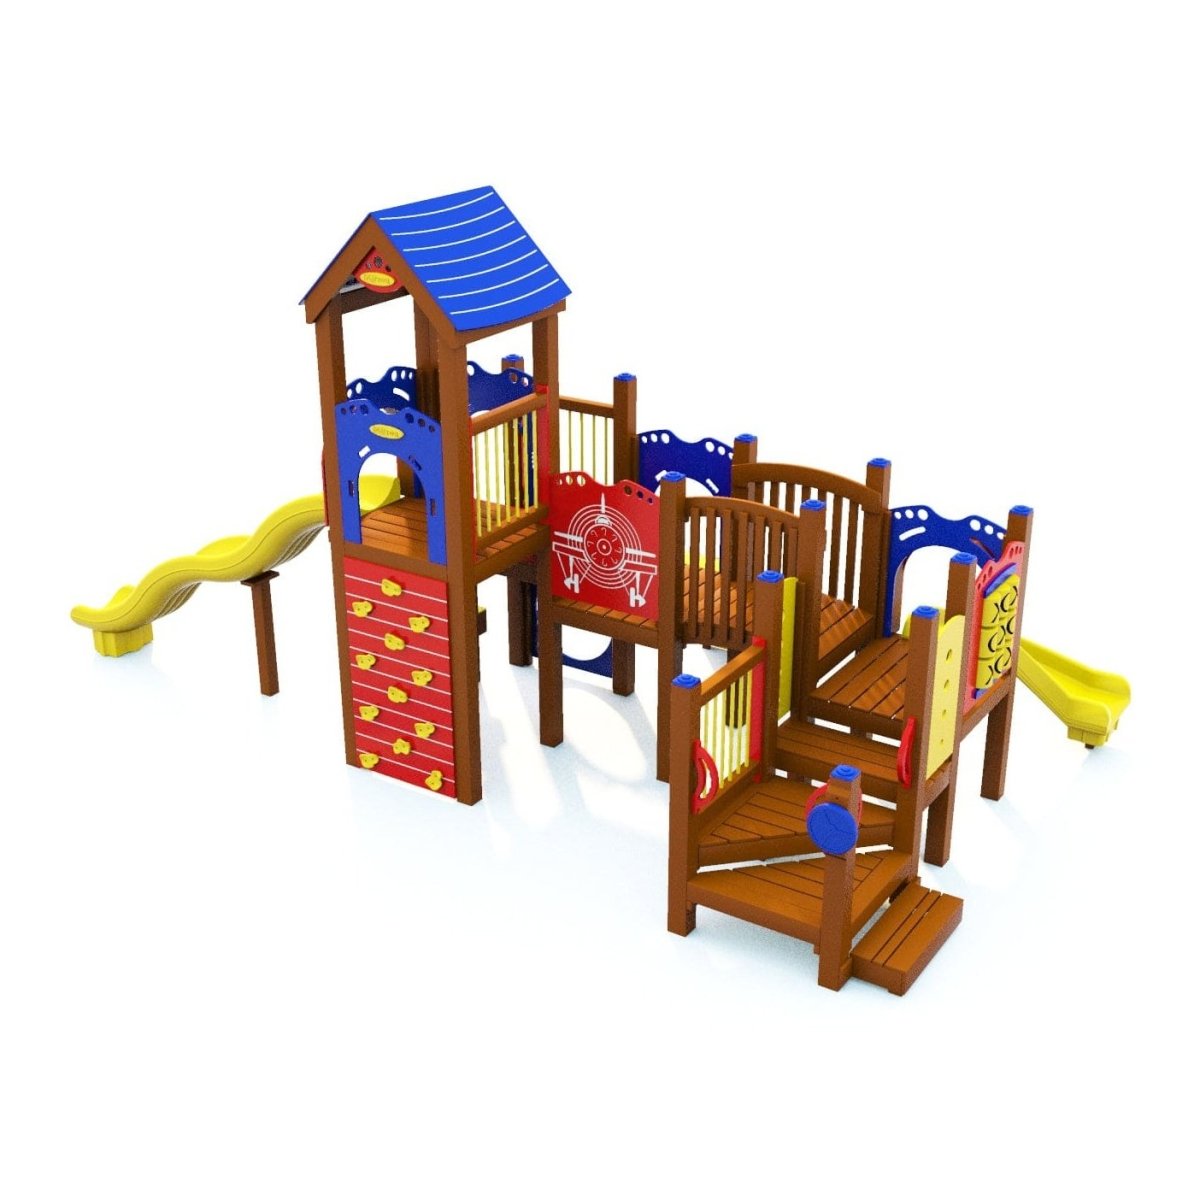 Eubank Playset - School-Age Playgrounds - Playtopia, Inc.